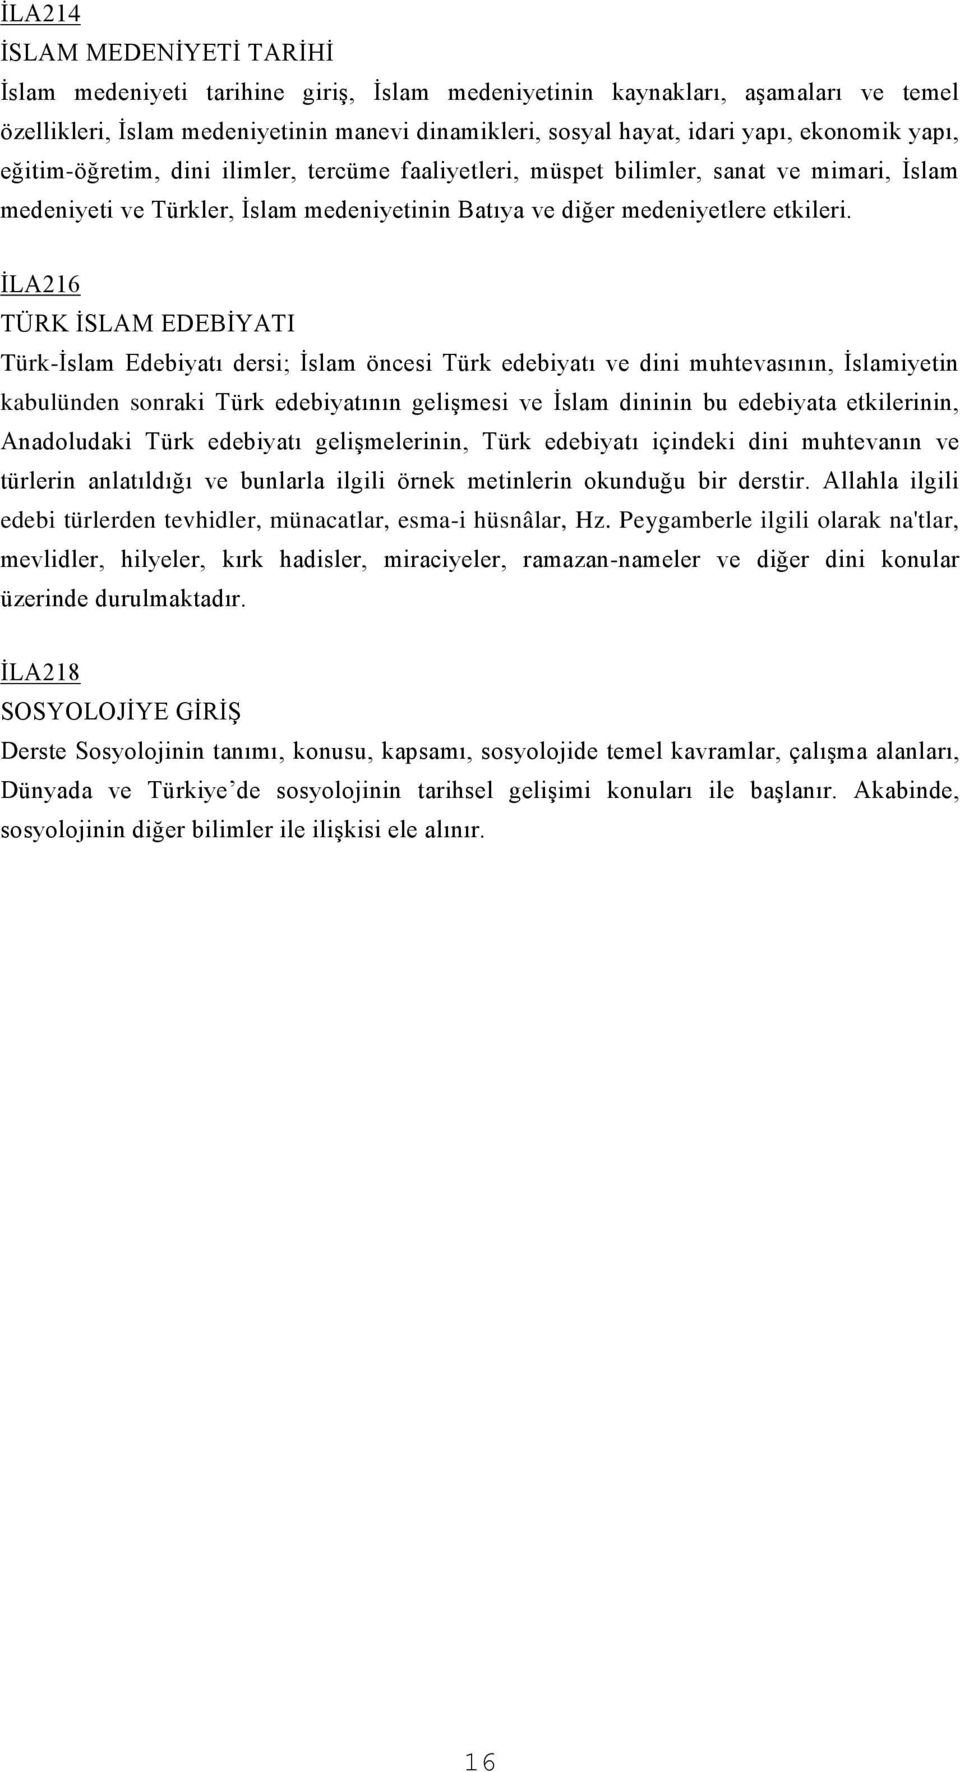 İLA216 TÜRK İSLAM EDEBİYATI Türk-İslam Edebiyatı dersi; İslam öncesi Türk edebiyatı ve dini muhtevasının, İslamiyetin kabulünden sonraki Türk edebiyatının gelişmesi ve İslam dininin bu edebiyata